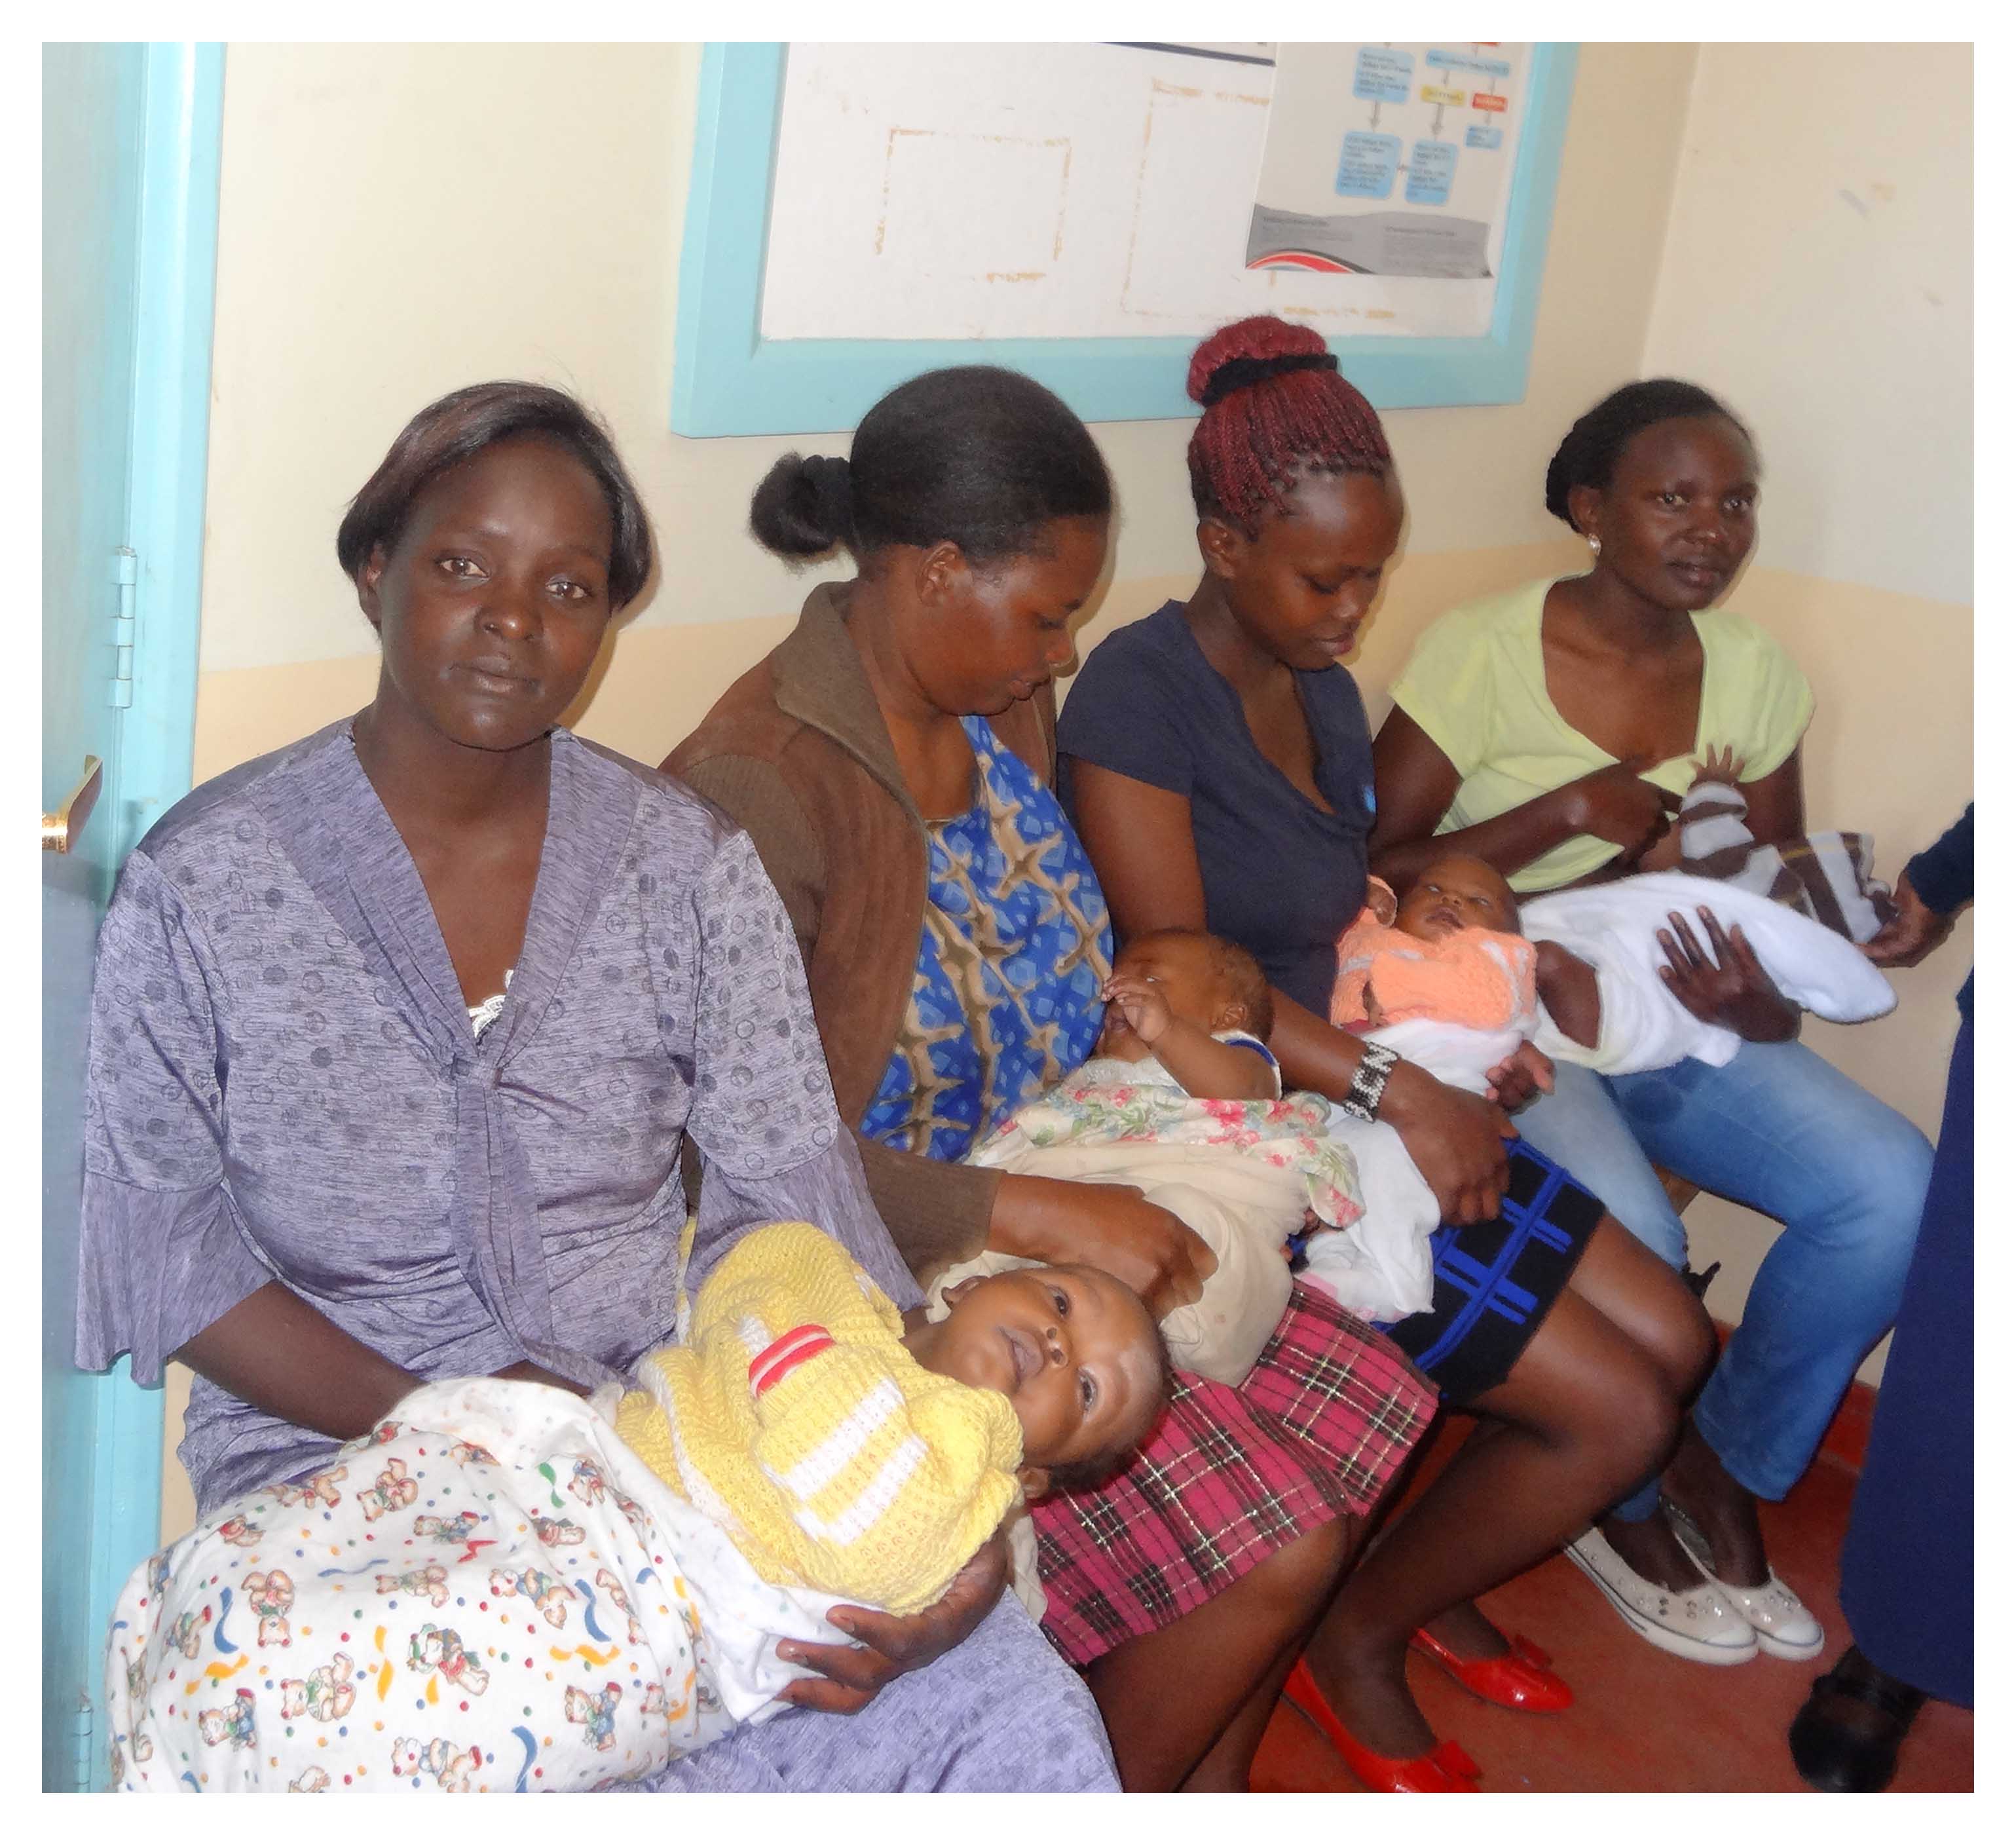 ケニア国ニエリ州の保健センターに乳幼児健診のために集まった母と子